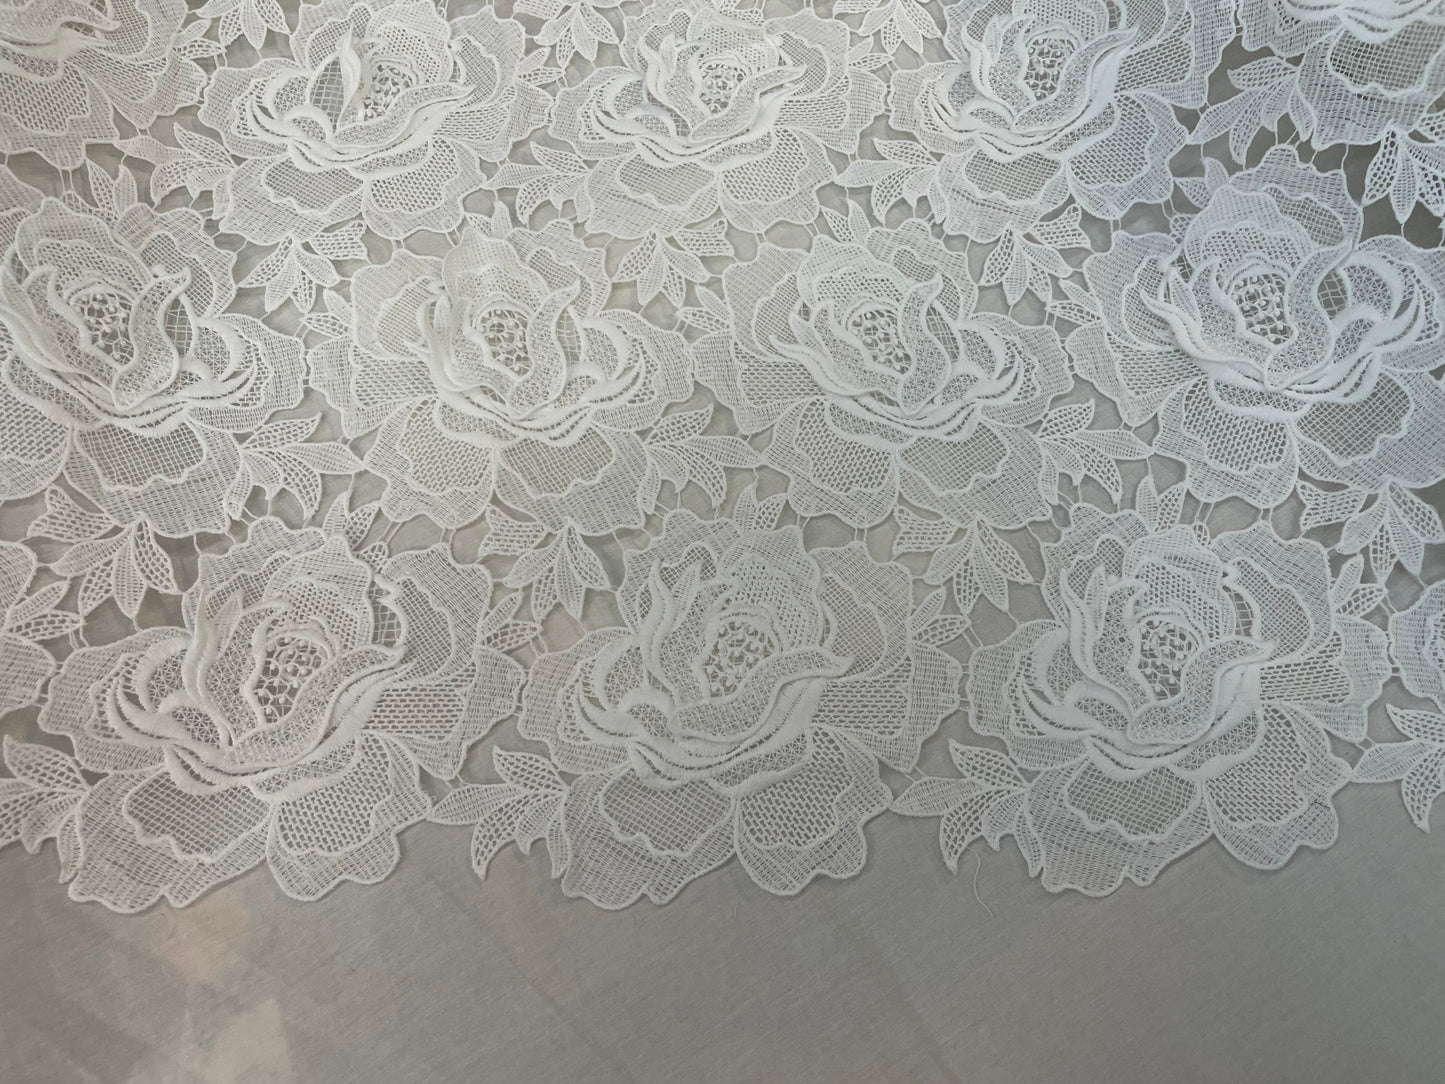 Floral Appliqued Cotton Lace - Warm White